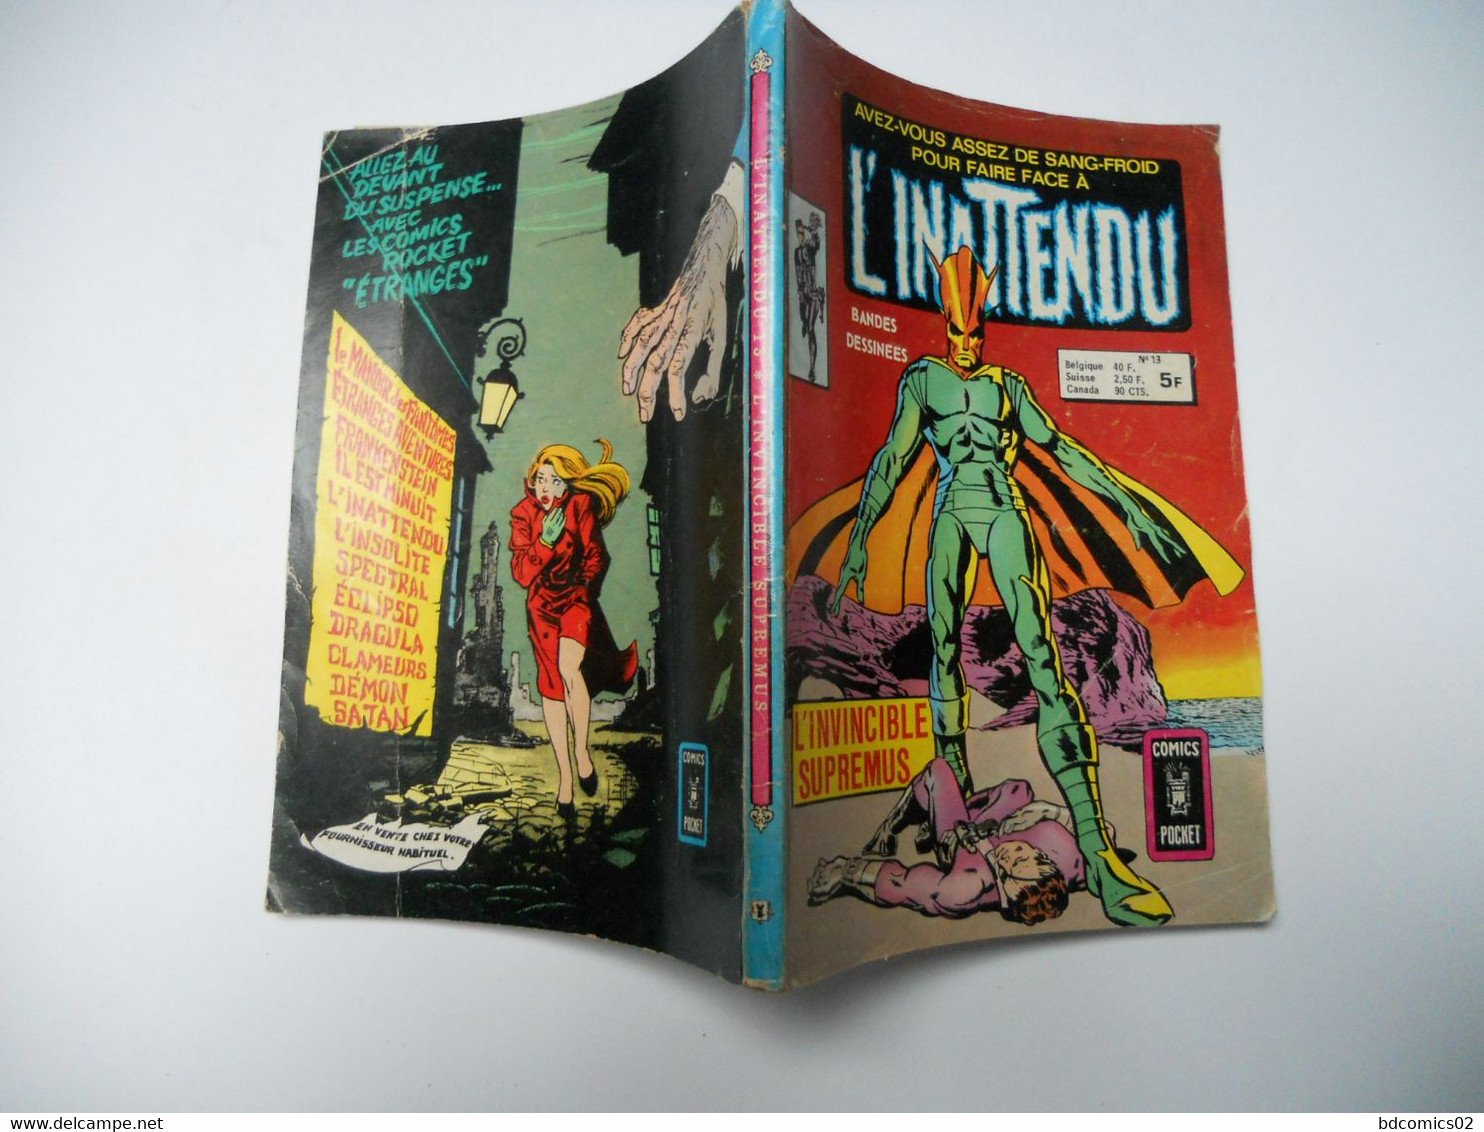 L Inatendu N° 13. L Invincible Supremus ARTIMA COMICS POCKET 1978 - Inattendu, L'